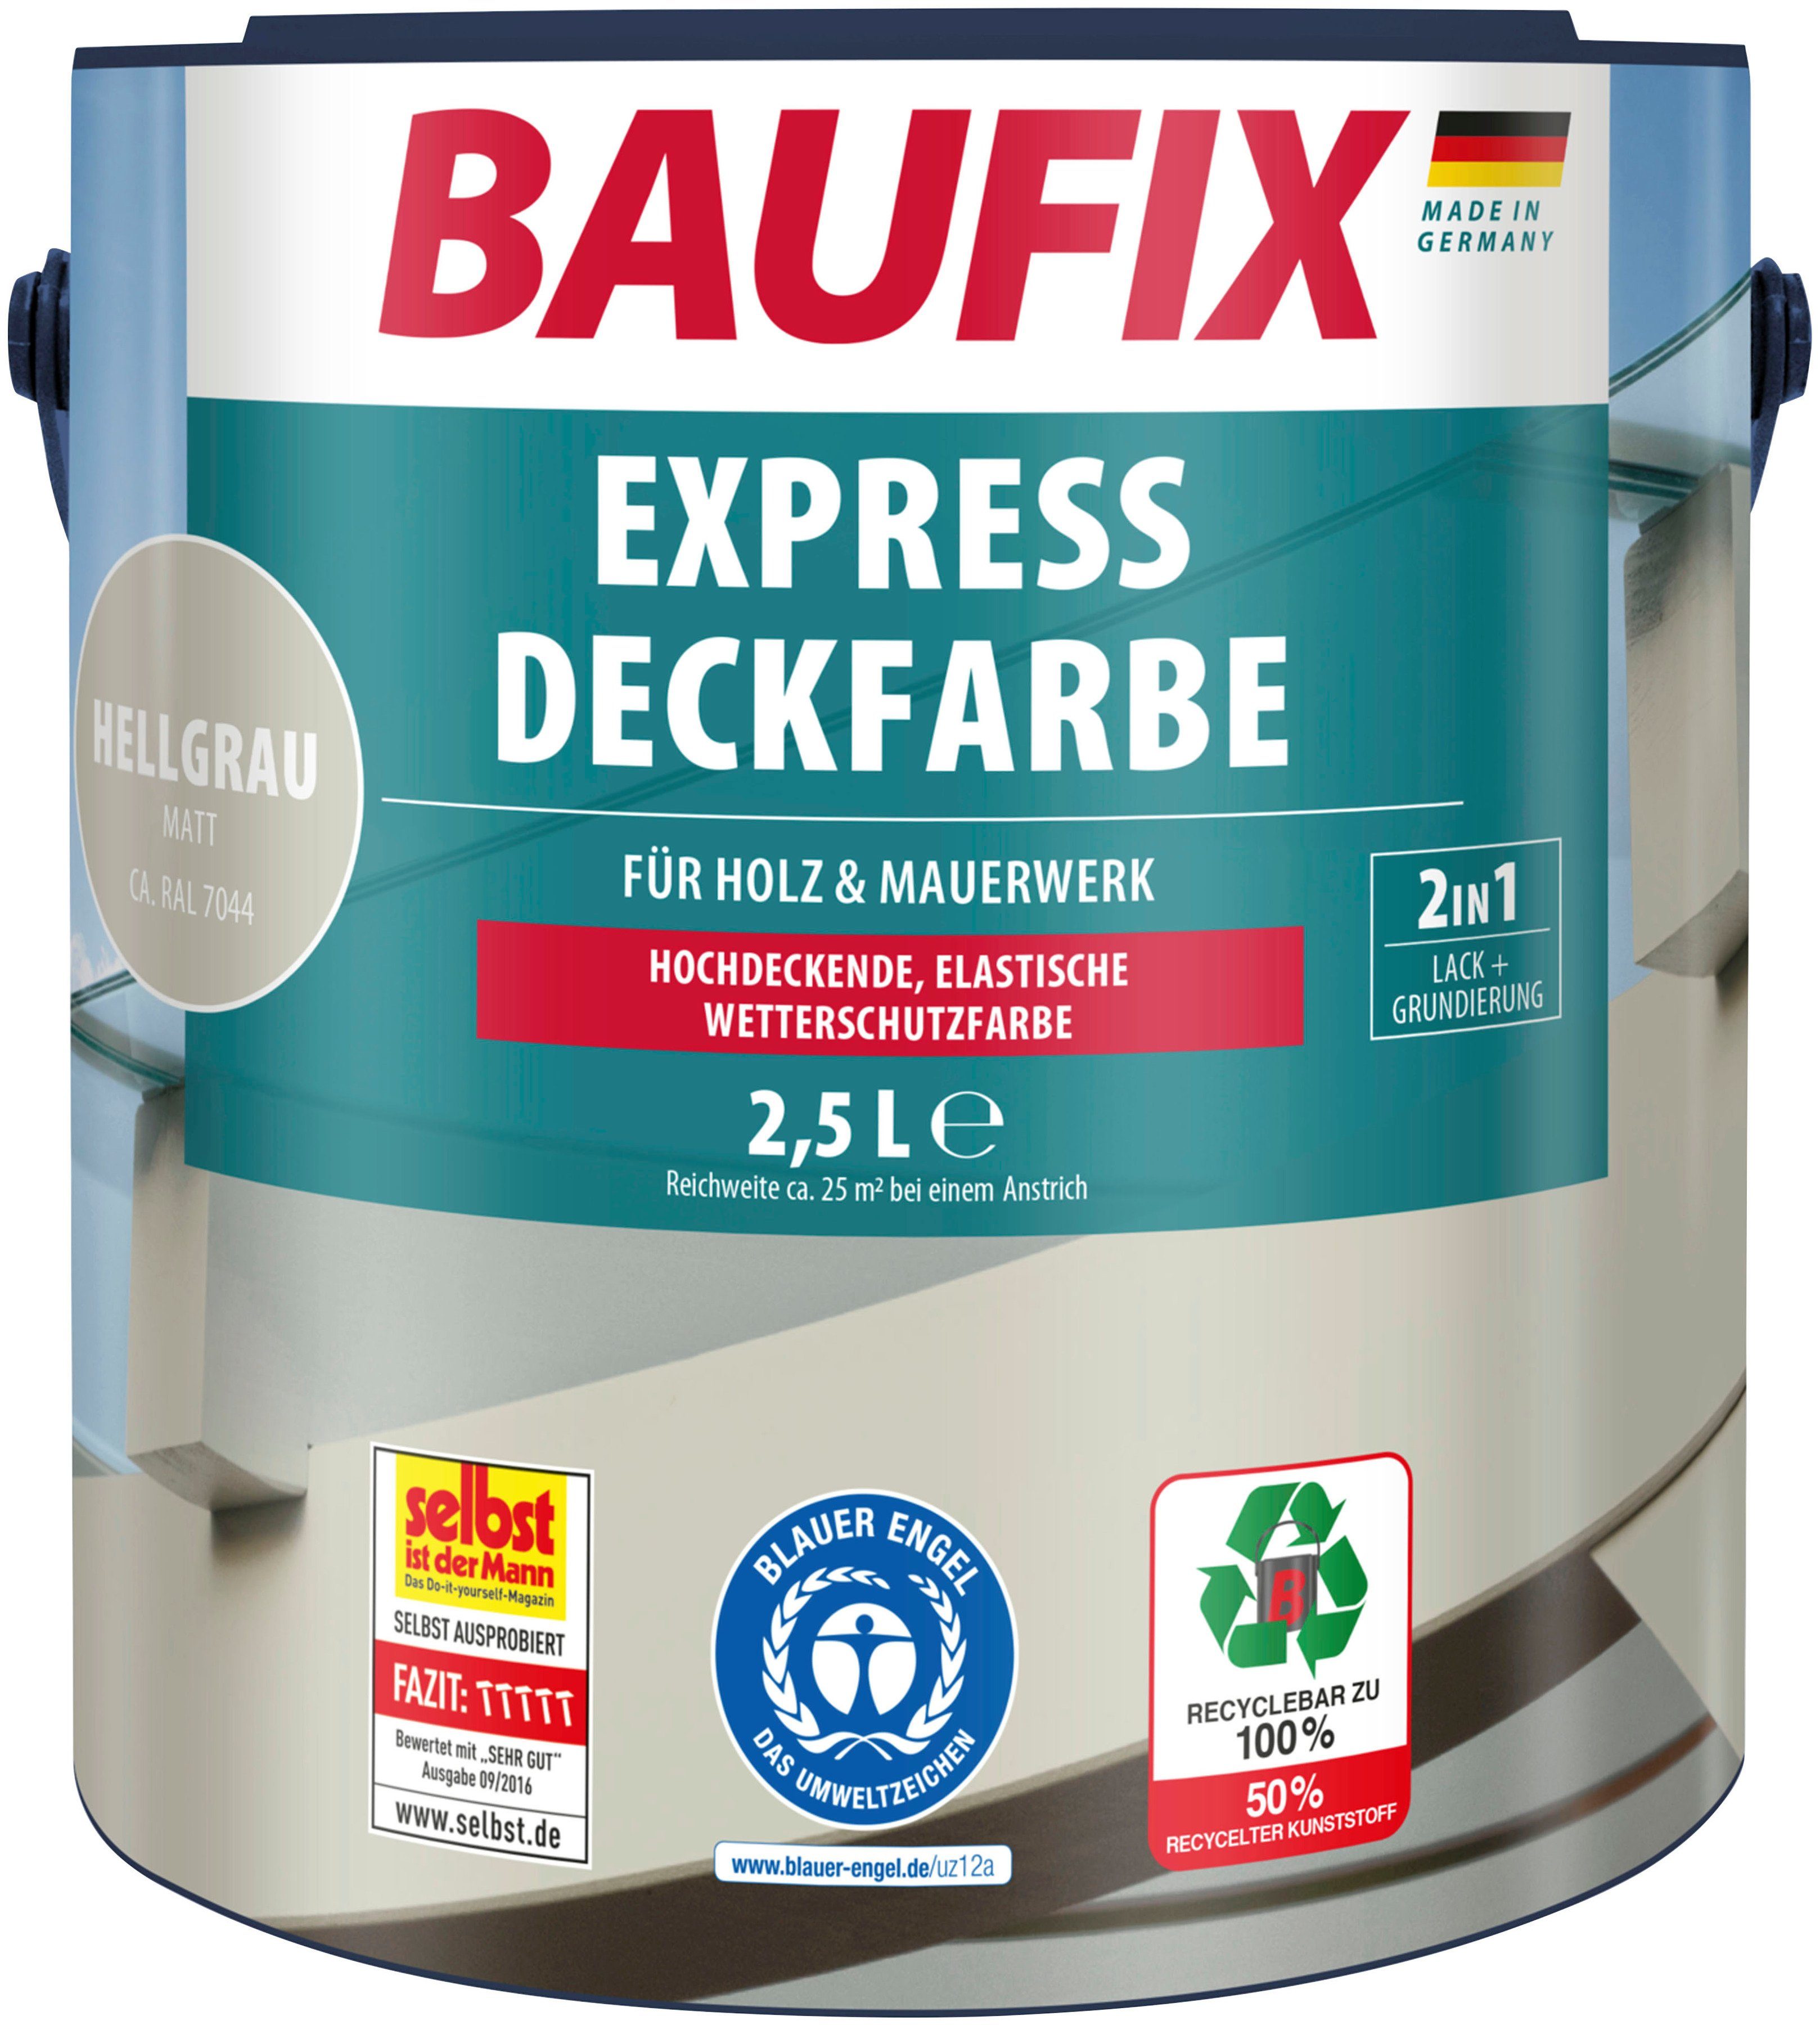 Baufix Wetterschutzfarbe Express Deckfarbe, erhöhte Witterungsbeständigkeit, elastisch, 2,5L, matt hellgrau